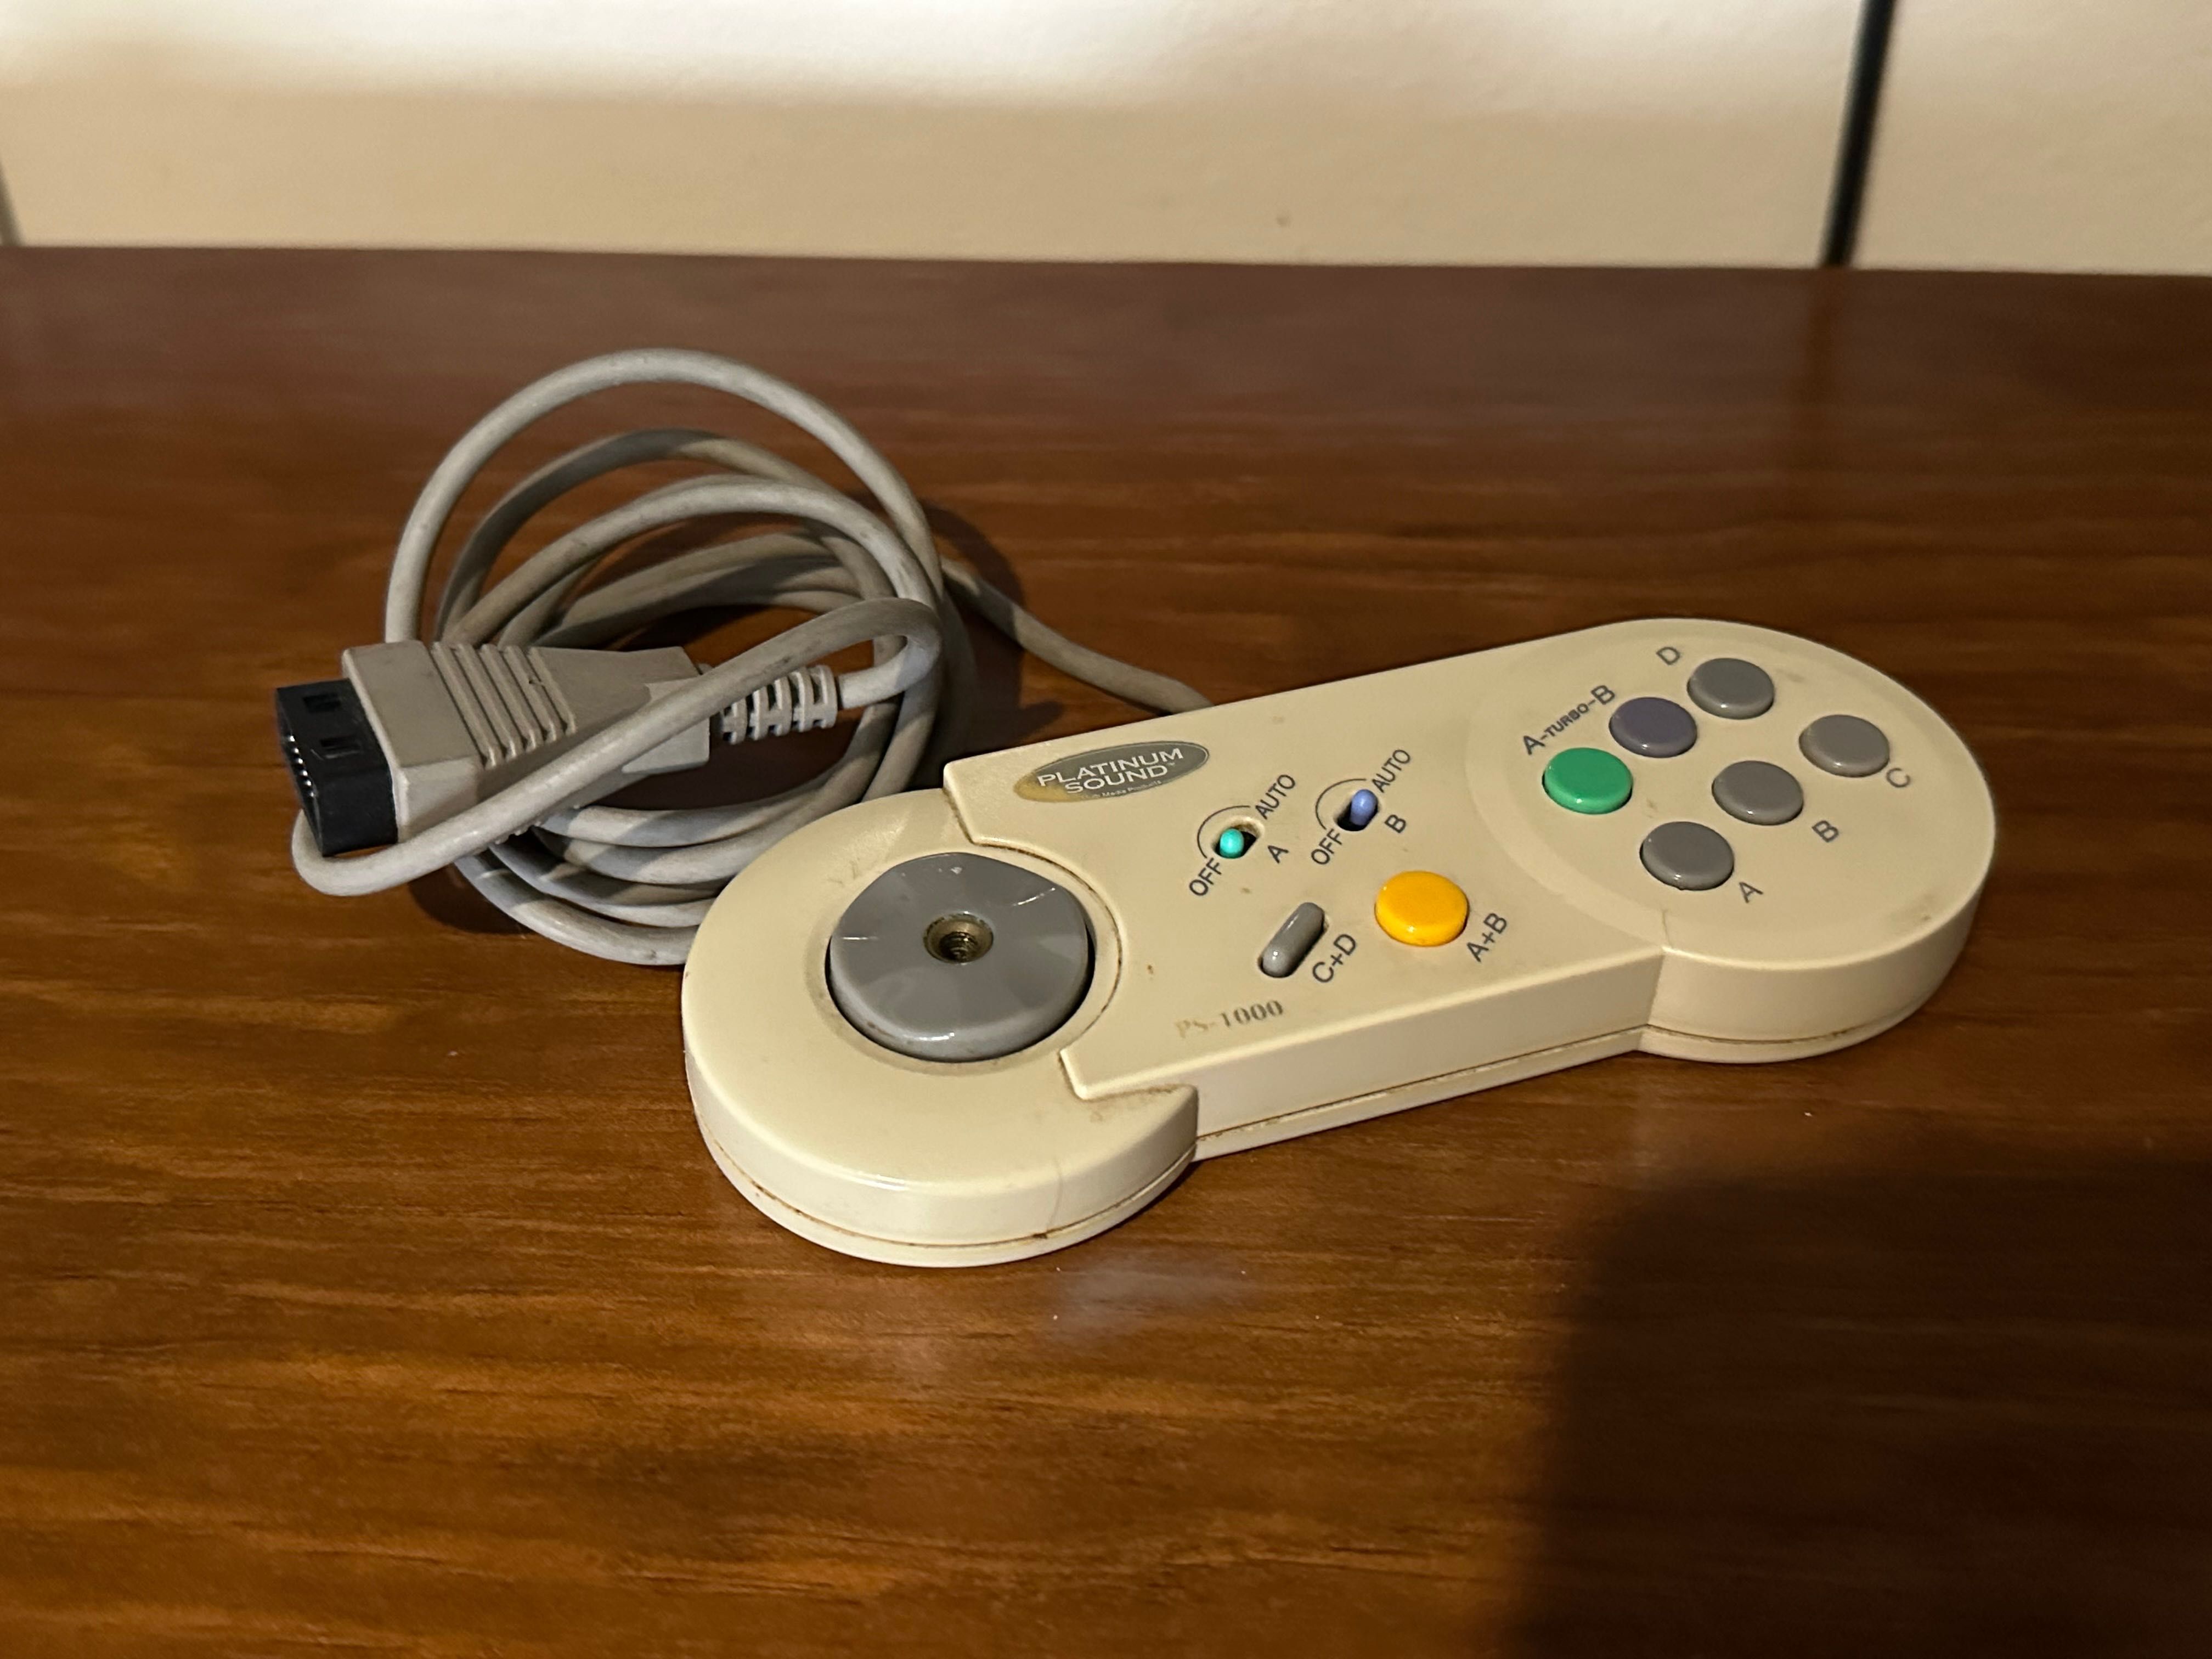 Joystick de gaming com vários botões